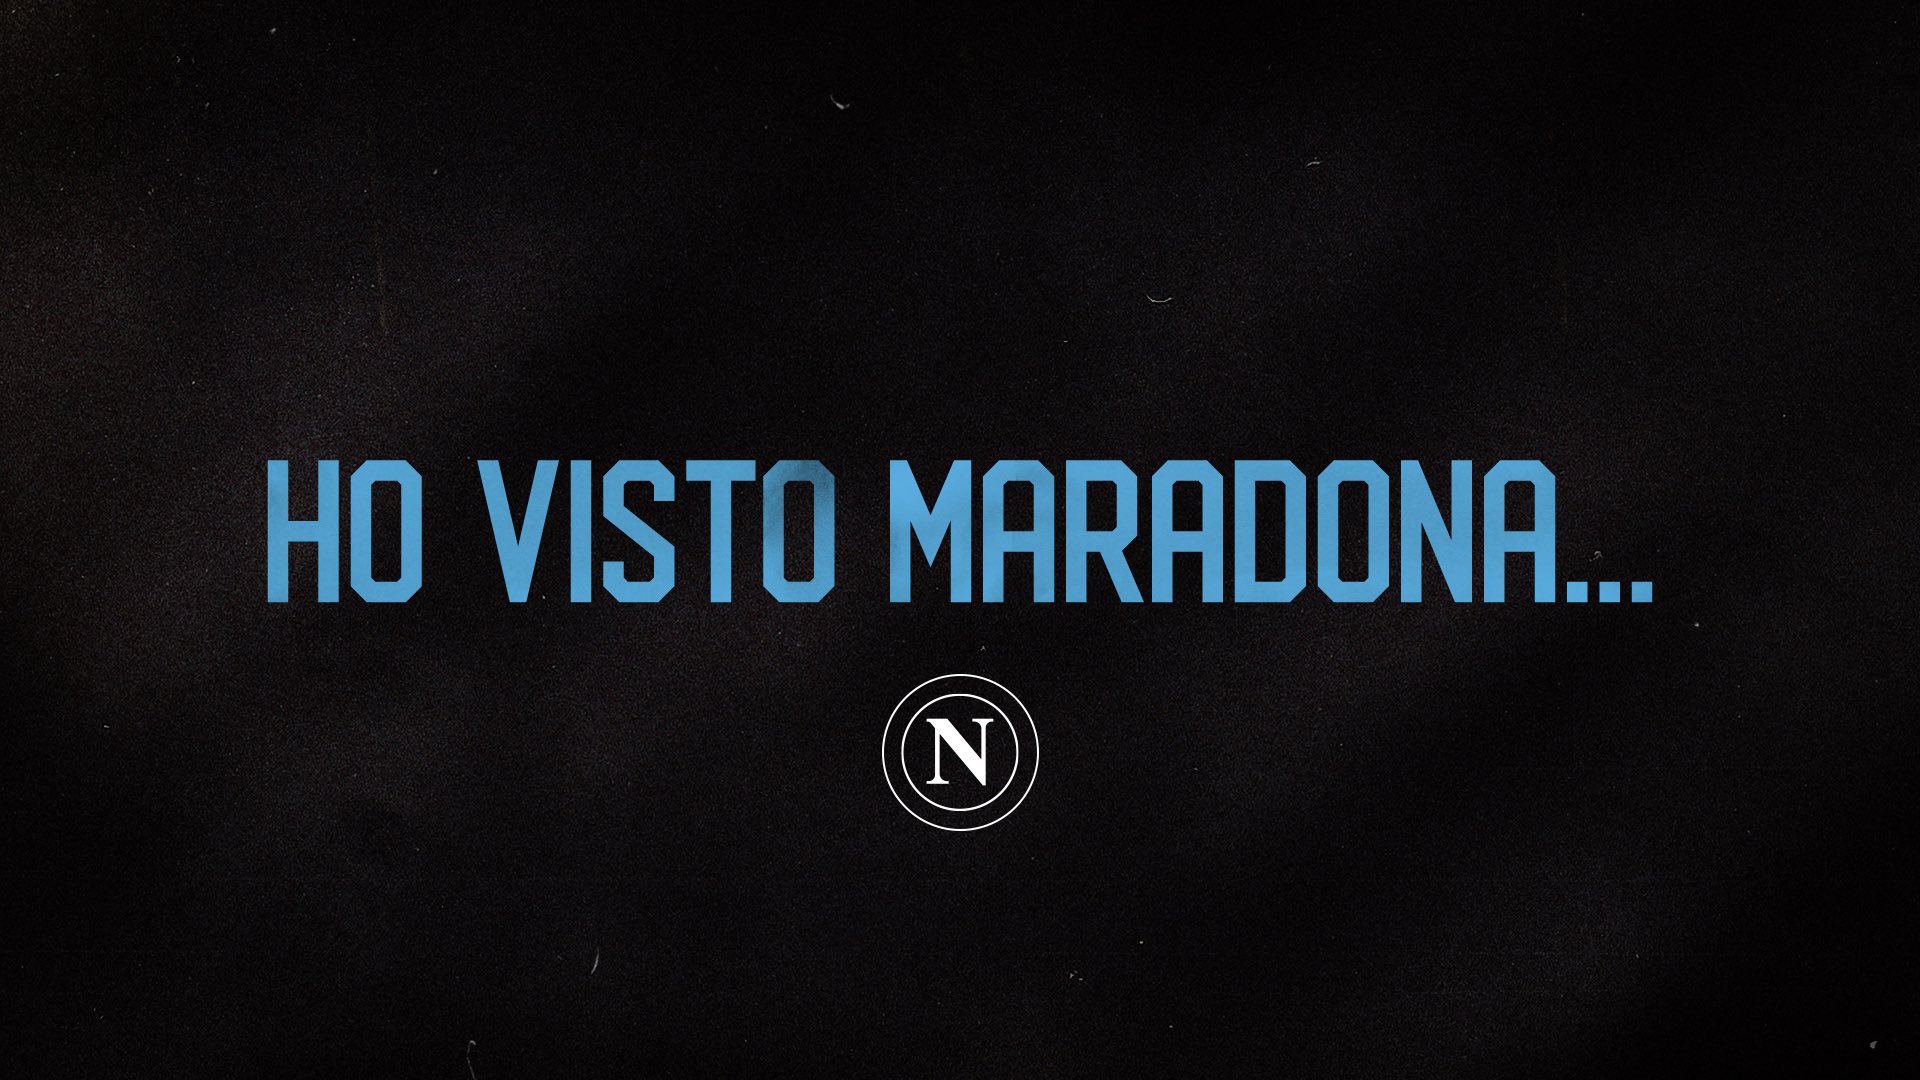 Morte di Maradona: i toccanti tweet del Napoli e delle altre squadre